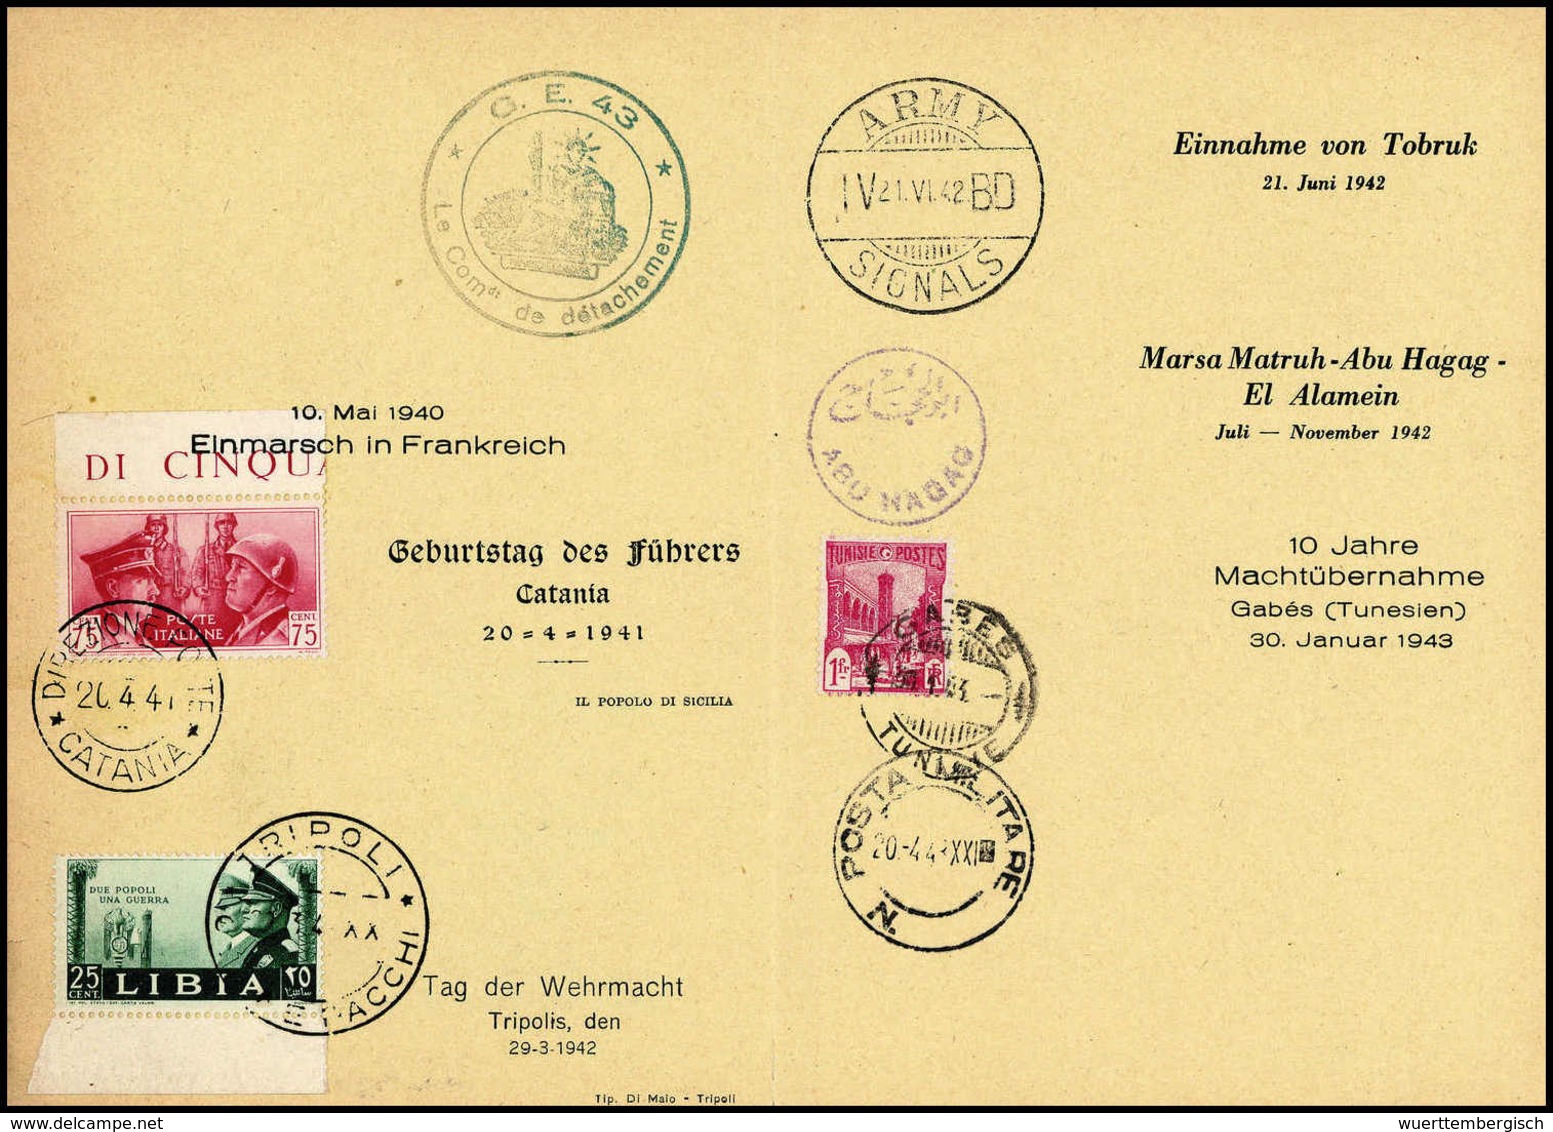 Beleg Spezial-Sammlung Rommel-Gedenkblätter: außergewöhnliche Sammlung von drei offiziellen Gedenkblättern mit roten Reg